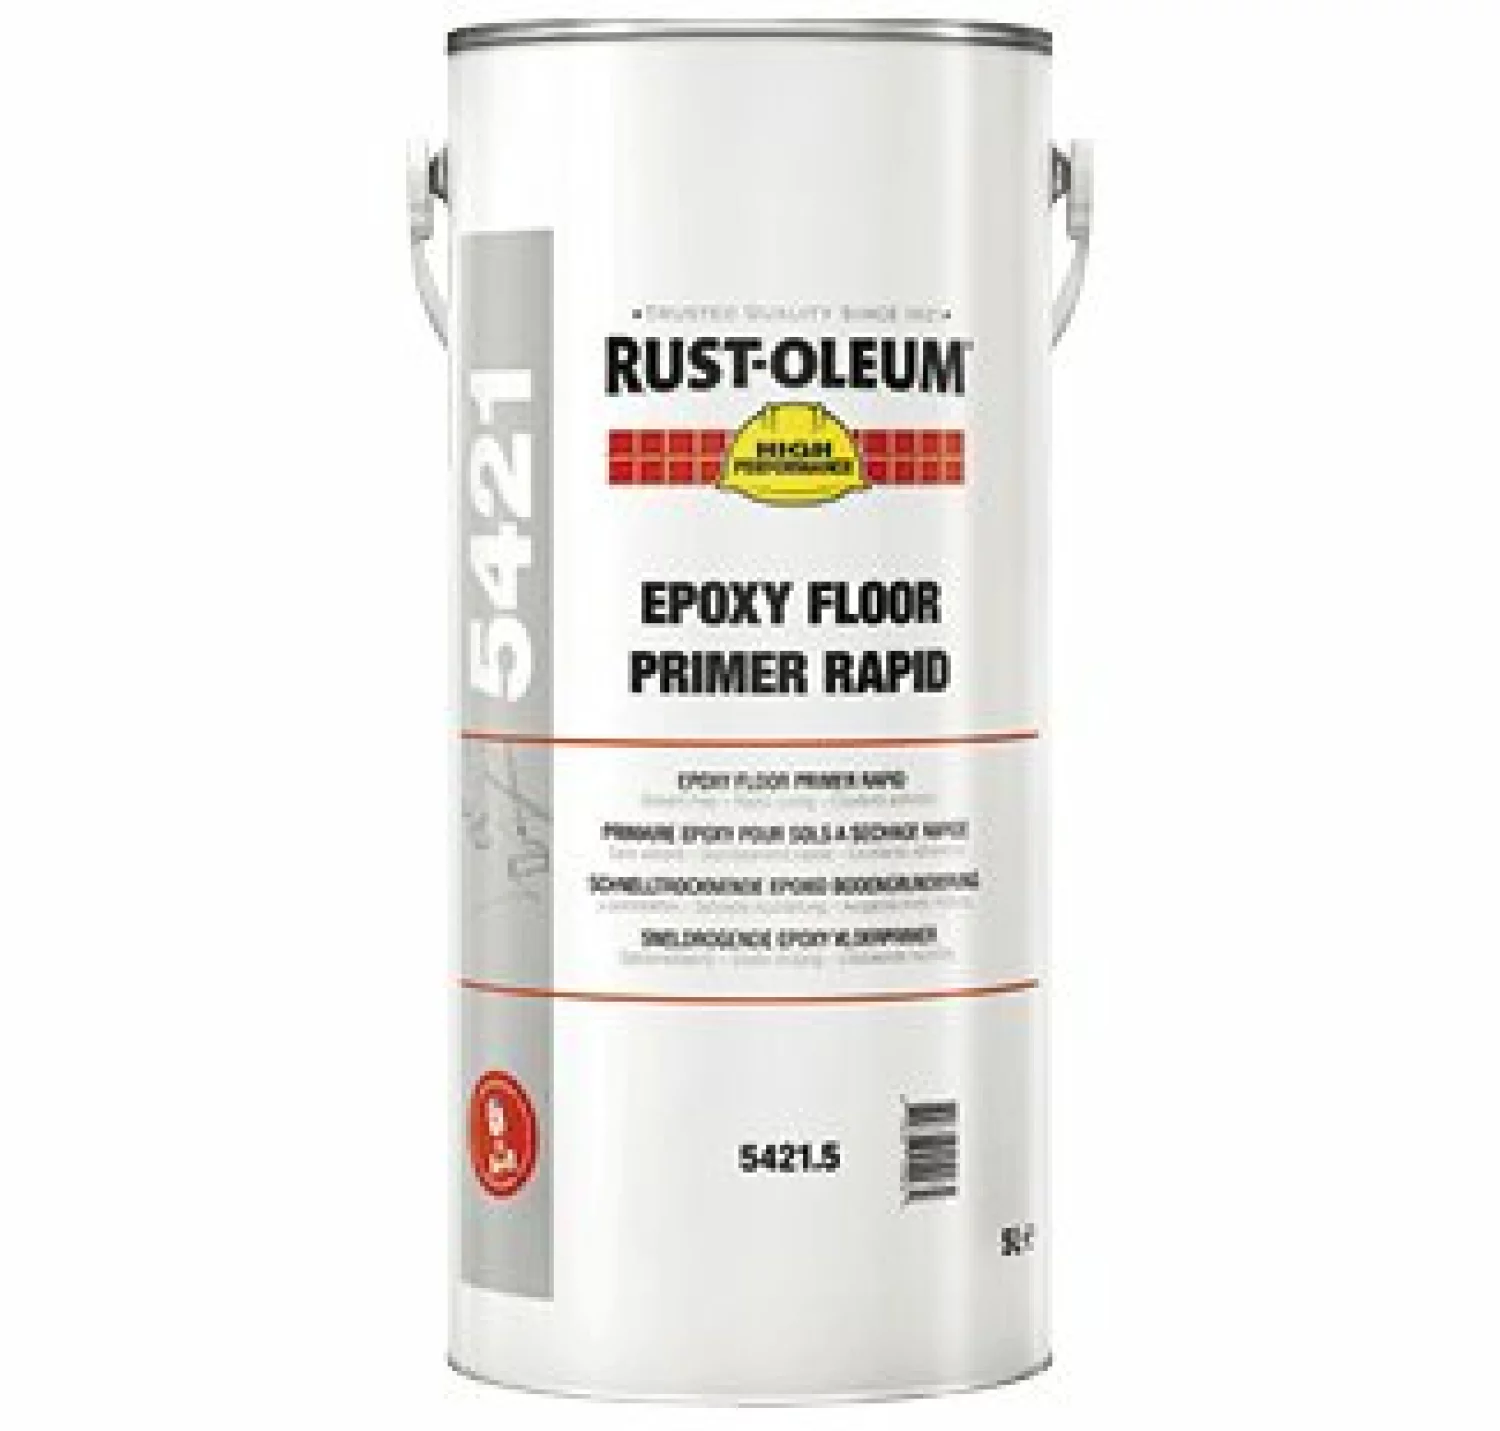 Rust-Oleum 5421 Epoxy Floor Primer Rapid 5 L